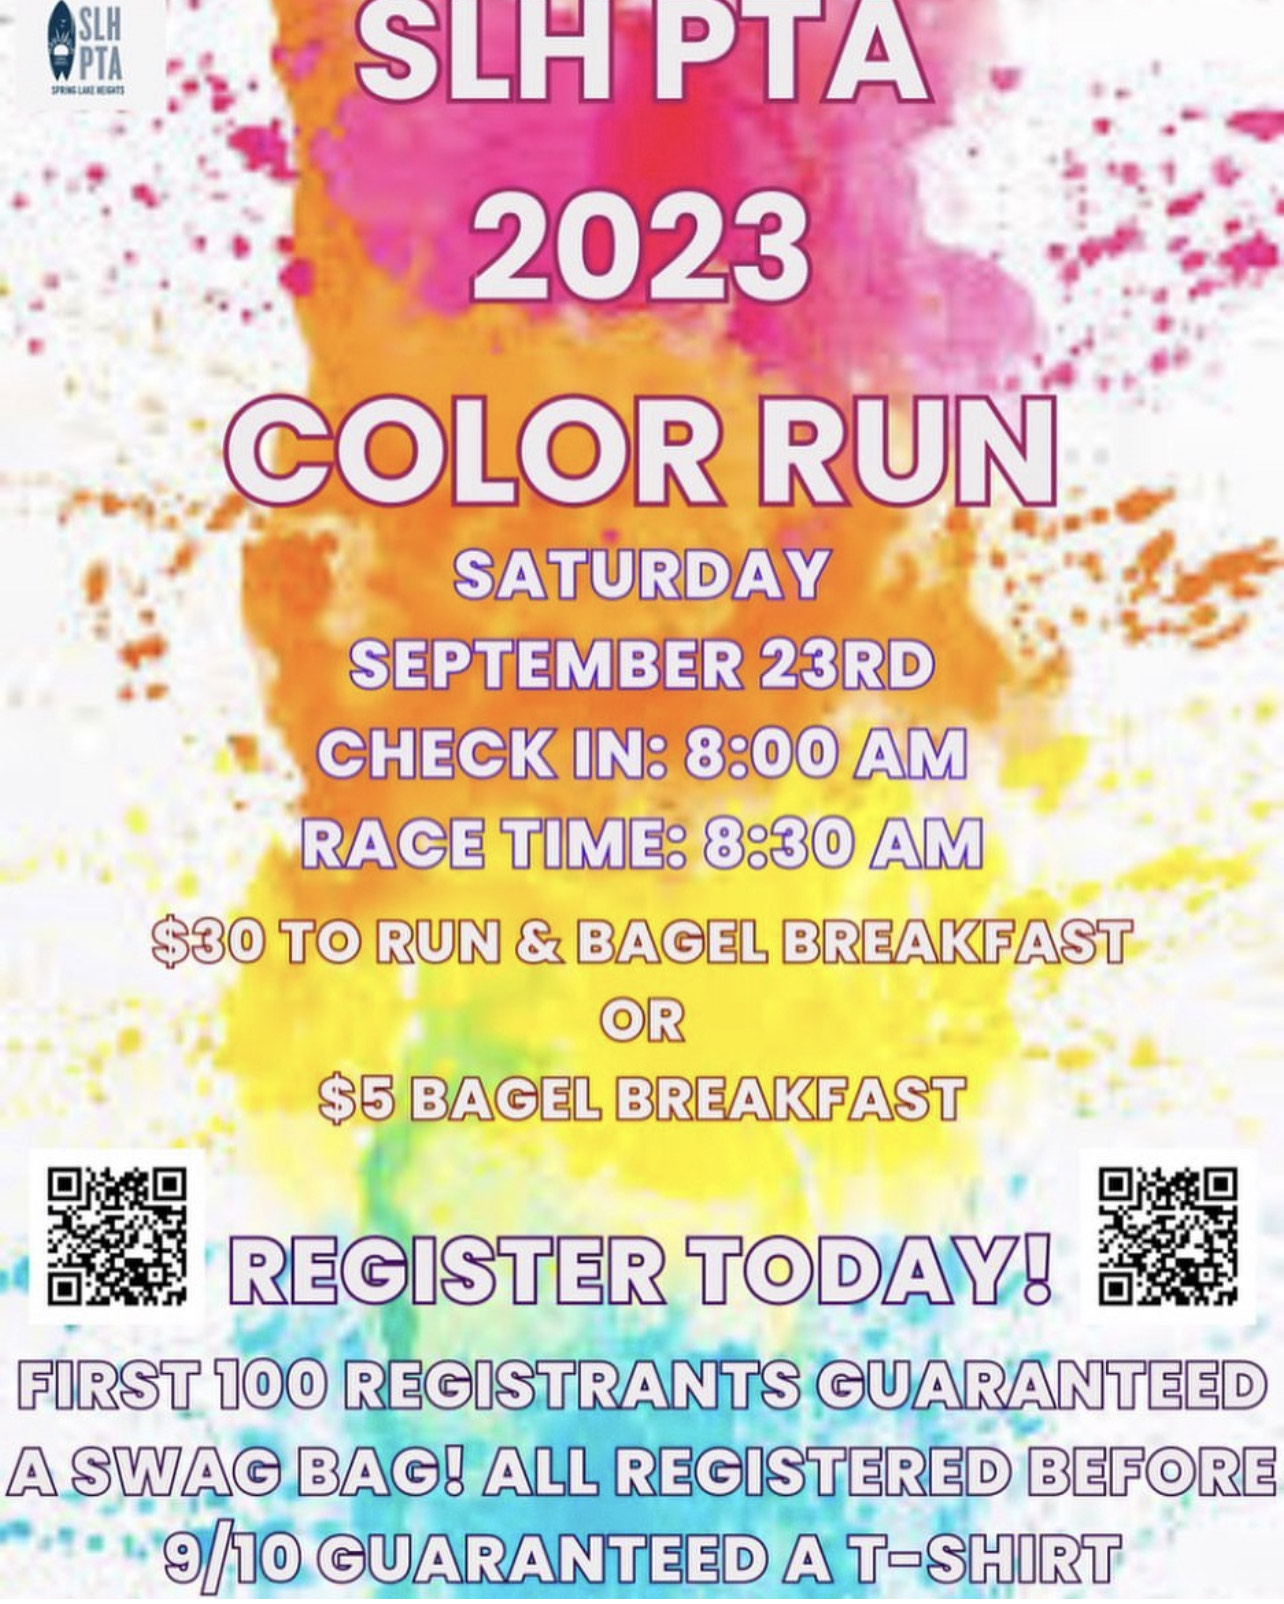 SLH PTA Color Run 2023